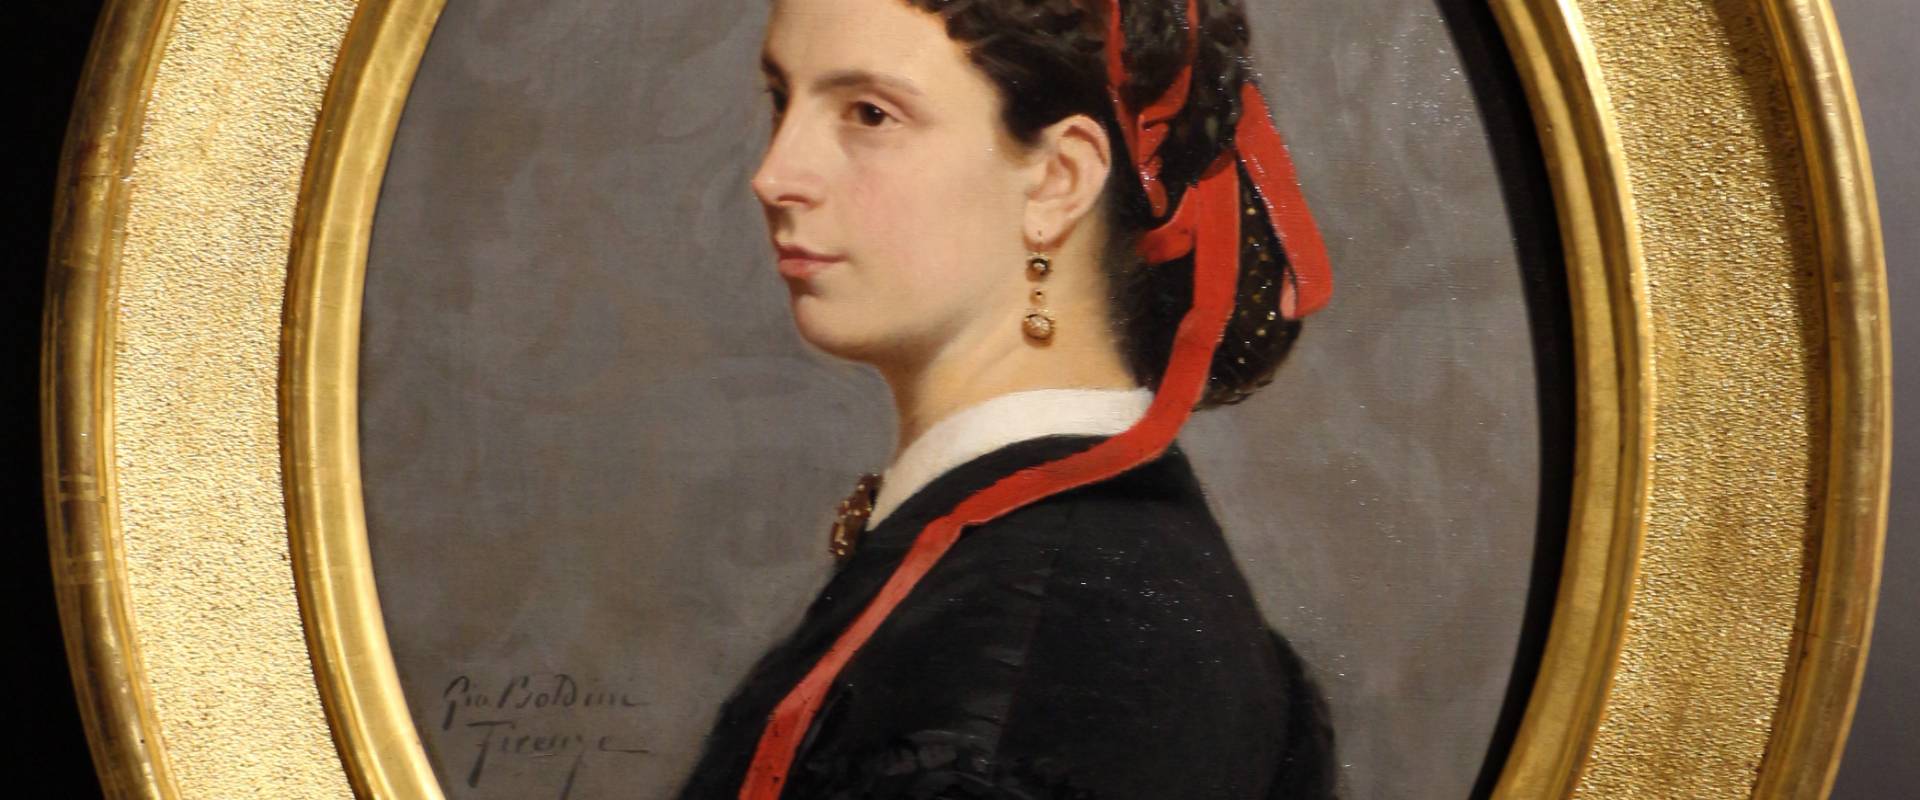 Giovanni boldini, ritratto di lilia monti nata contessa, 1864-65 foto di Sailko